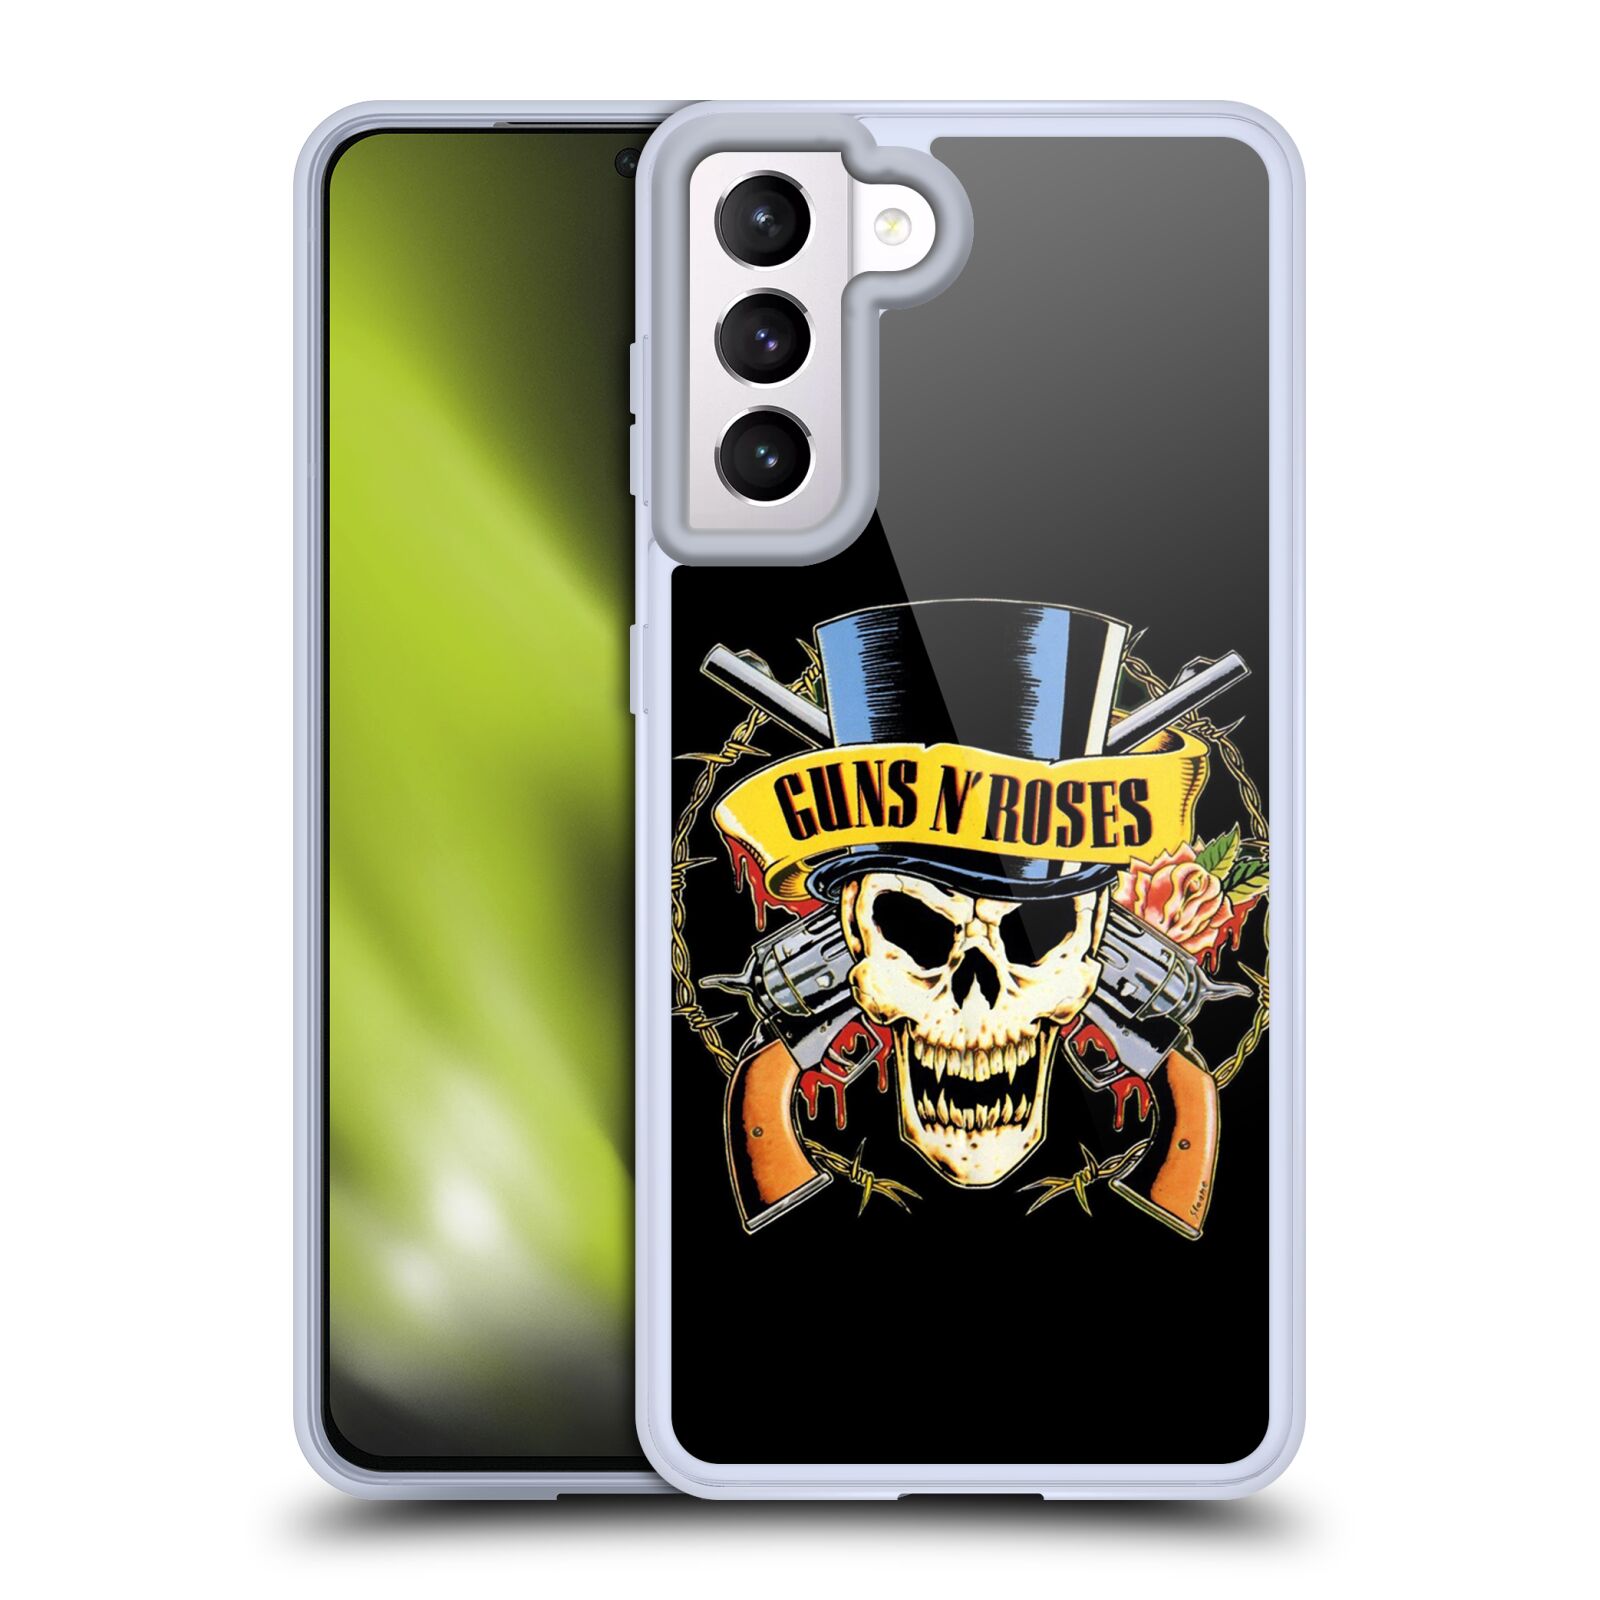 Silikonové pouzdro na mobil Samsung Galaxy S21 5G - Head Case - Guns N' Roses - Lebka (Silikonový kryt, obal, pouzdro na mobilní telefon Samsung Galaxy S21 5G G991B s motivem Guns N' Roses - Lebka)